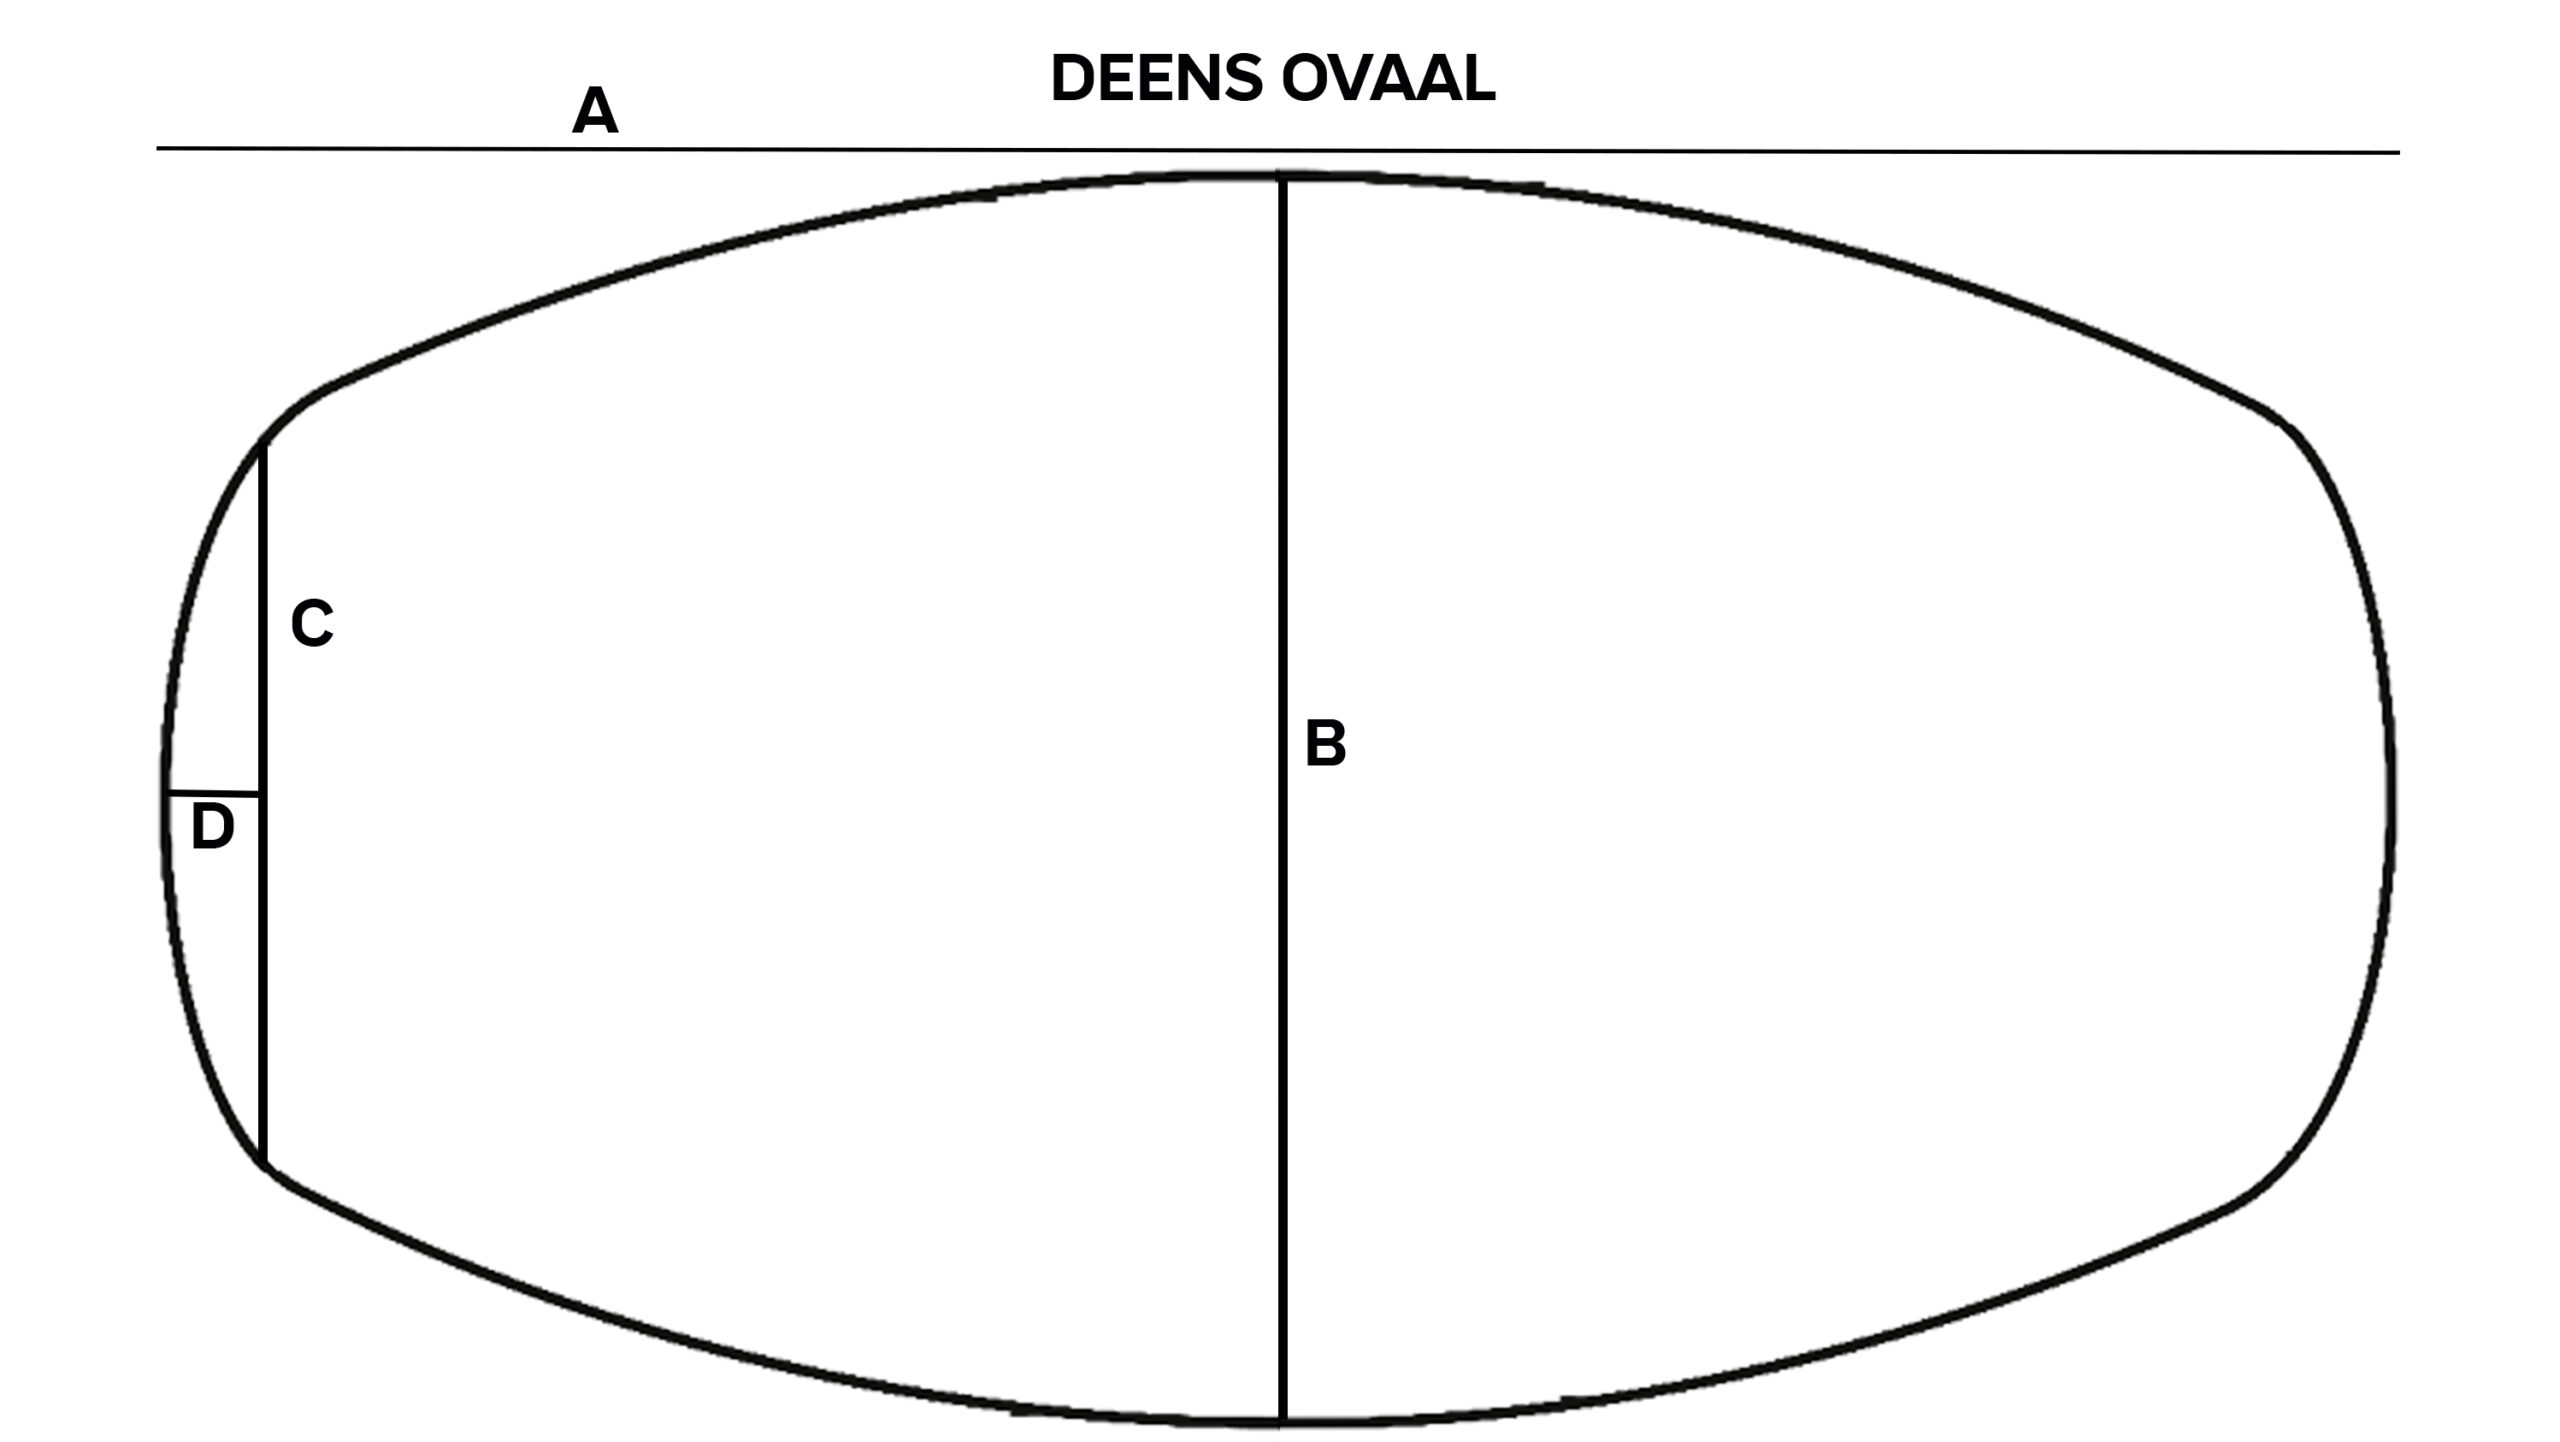 Deens ovaal